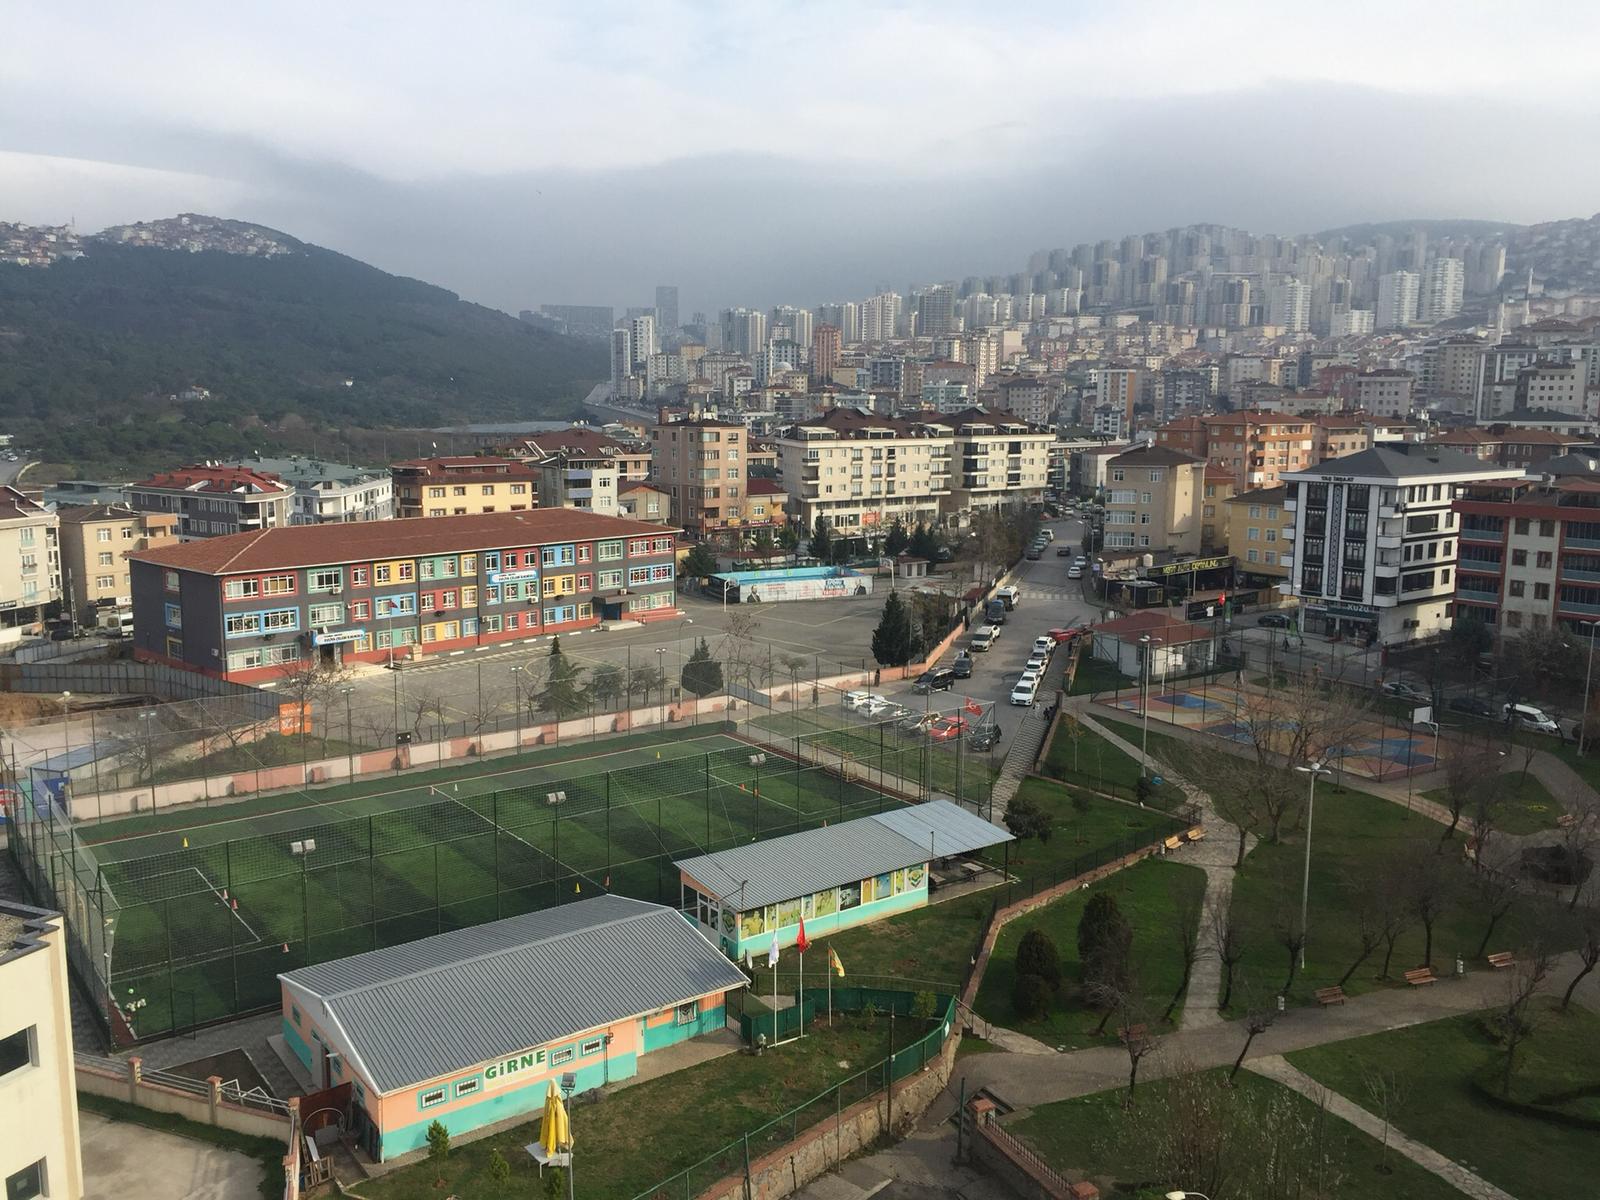 Girne Gençlik ve Spor Kulübü